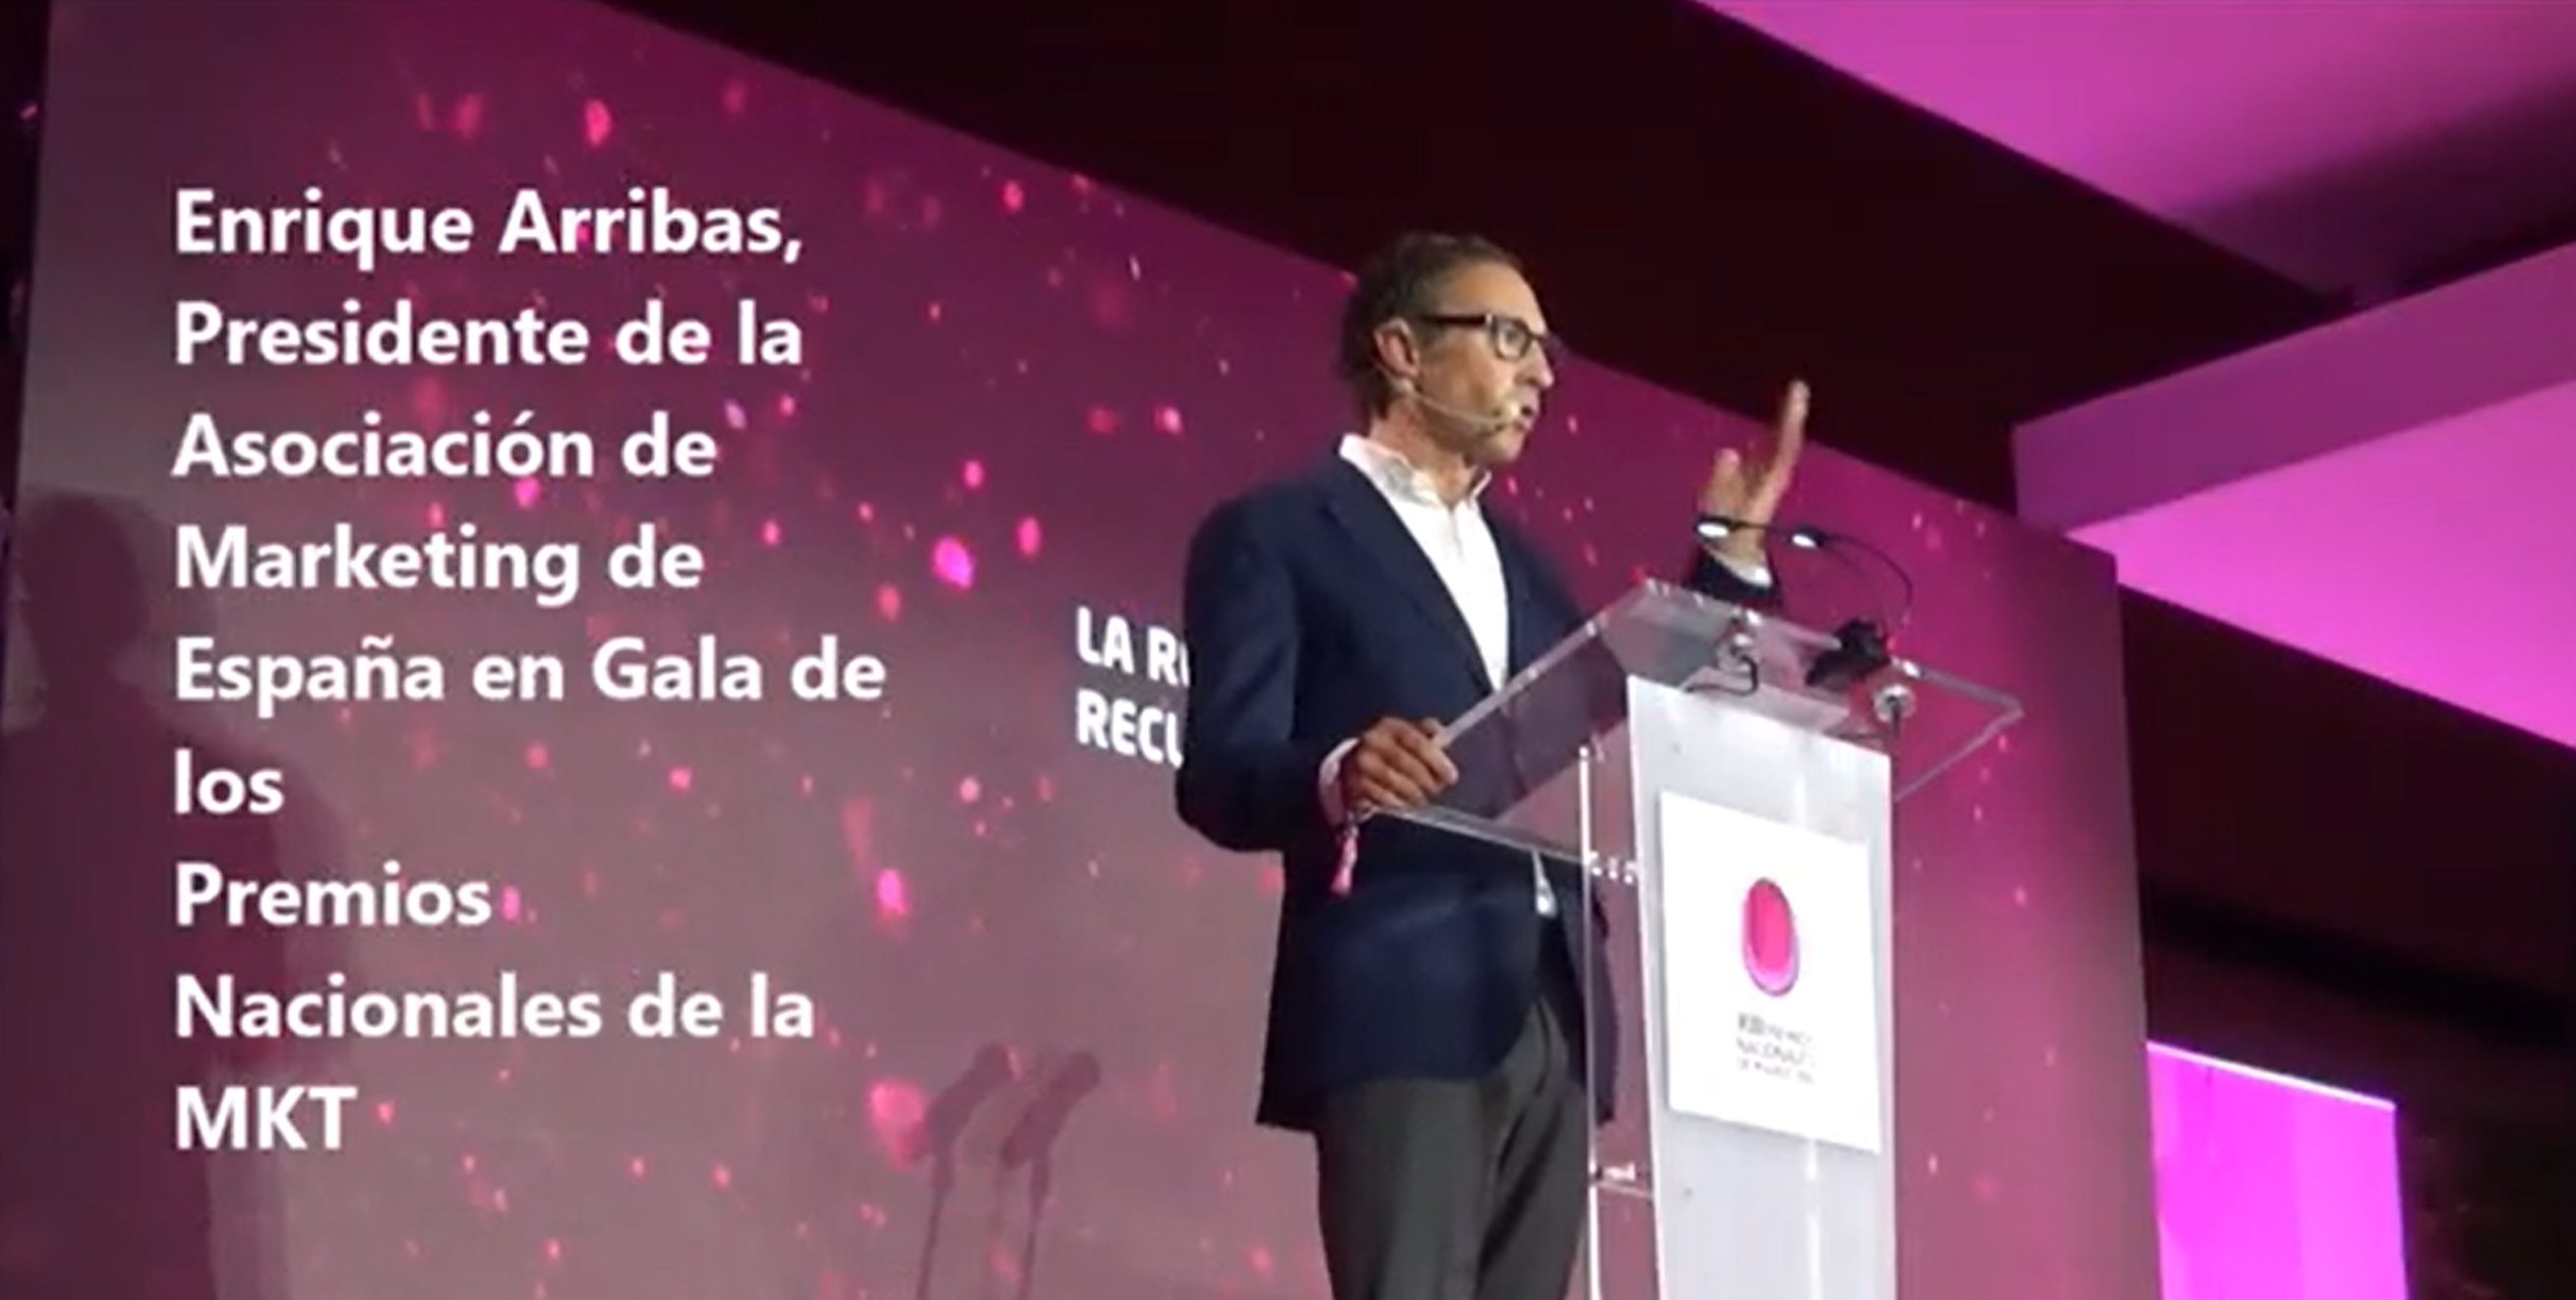 Enrique Arribas , Gala de los Premios Nacionales de la MKT, santander, mkt, programapublicidad